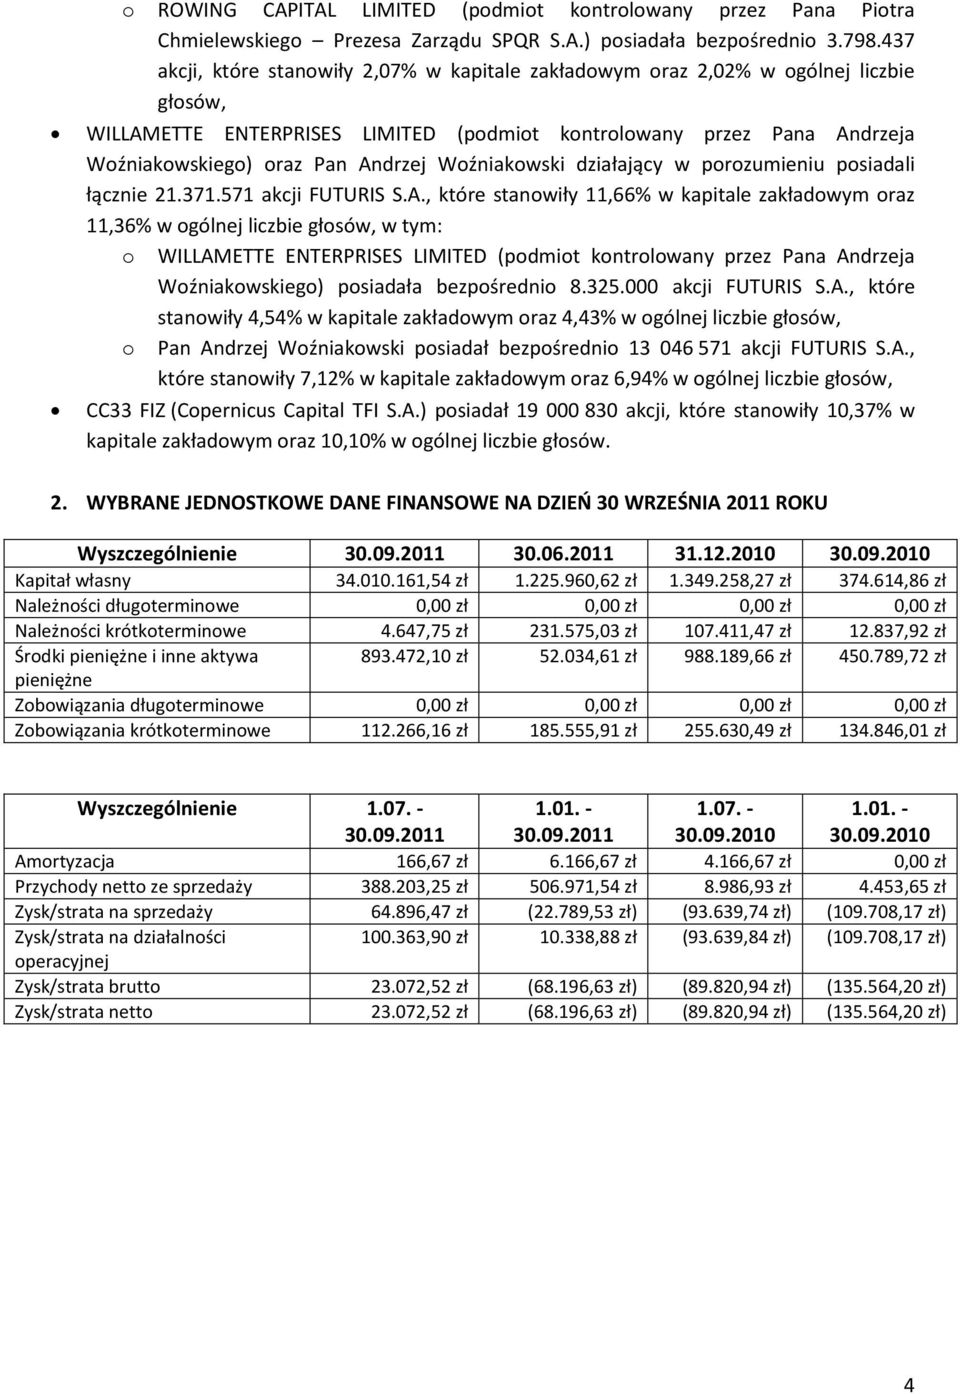 Woźniakowski działający w porozumieniu posiadali łącznie 21.371.571 akcji FUTURIS S.A.